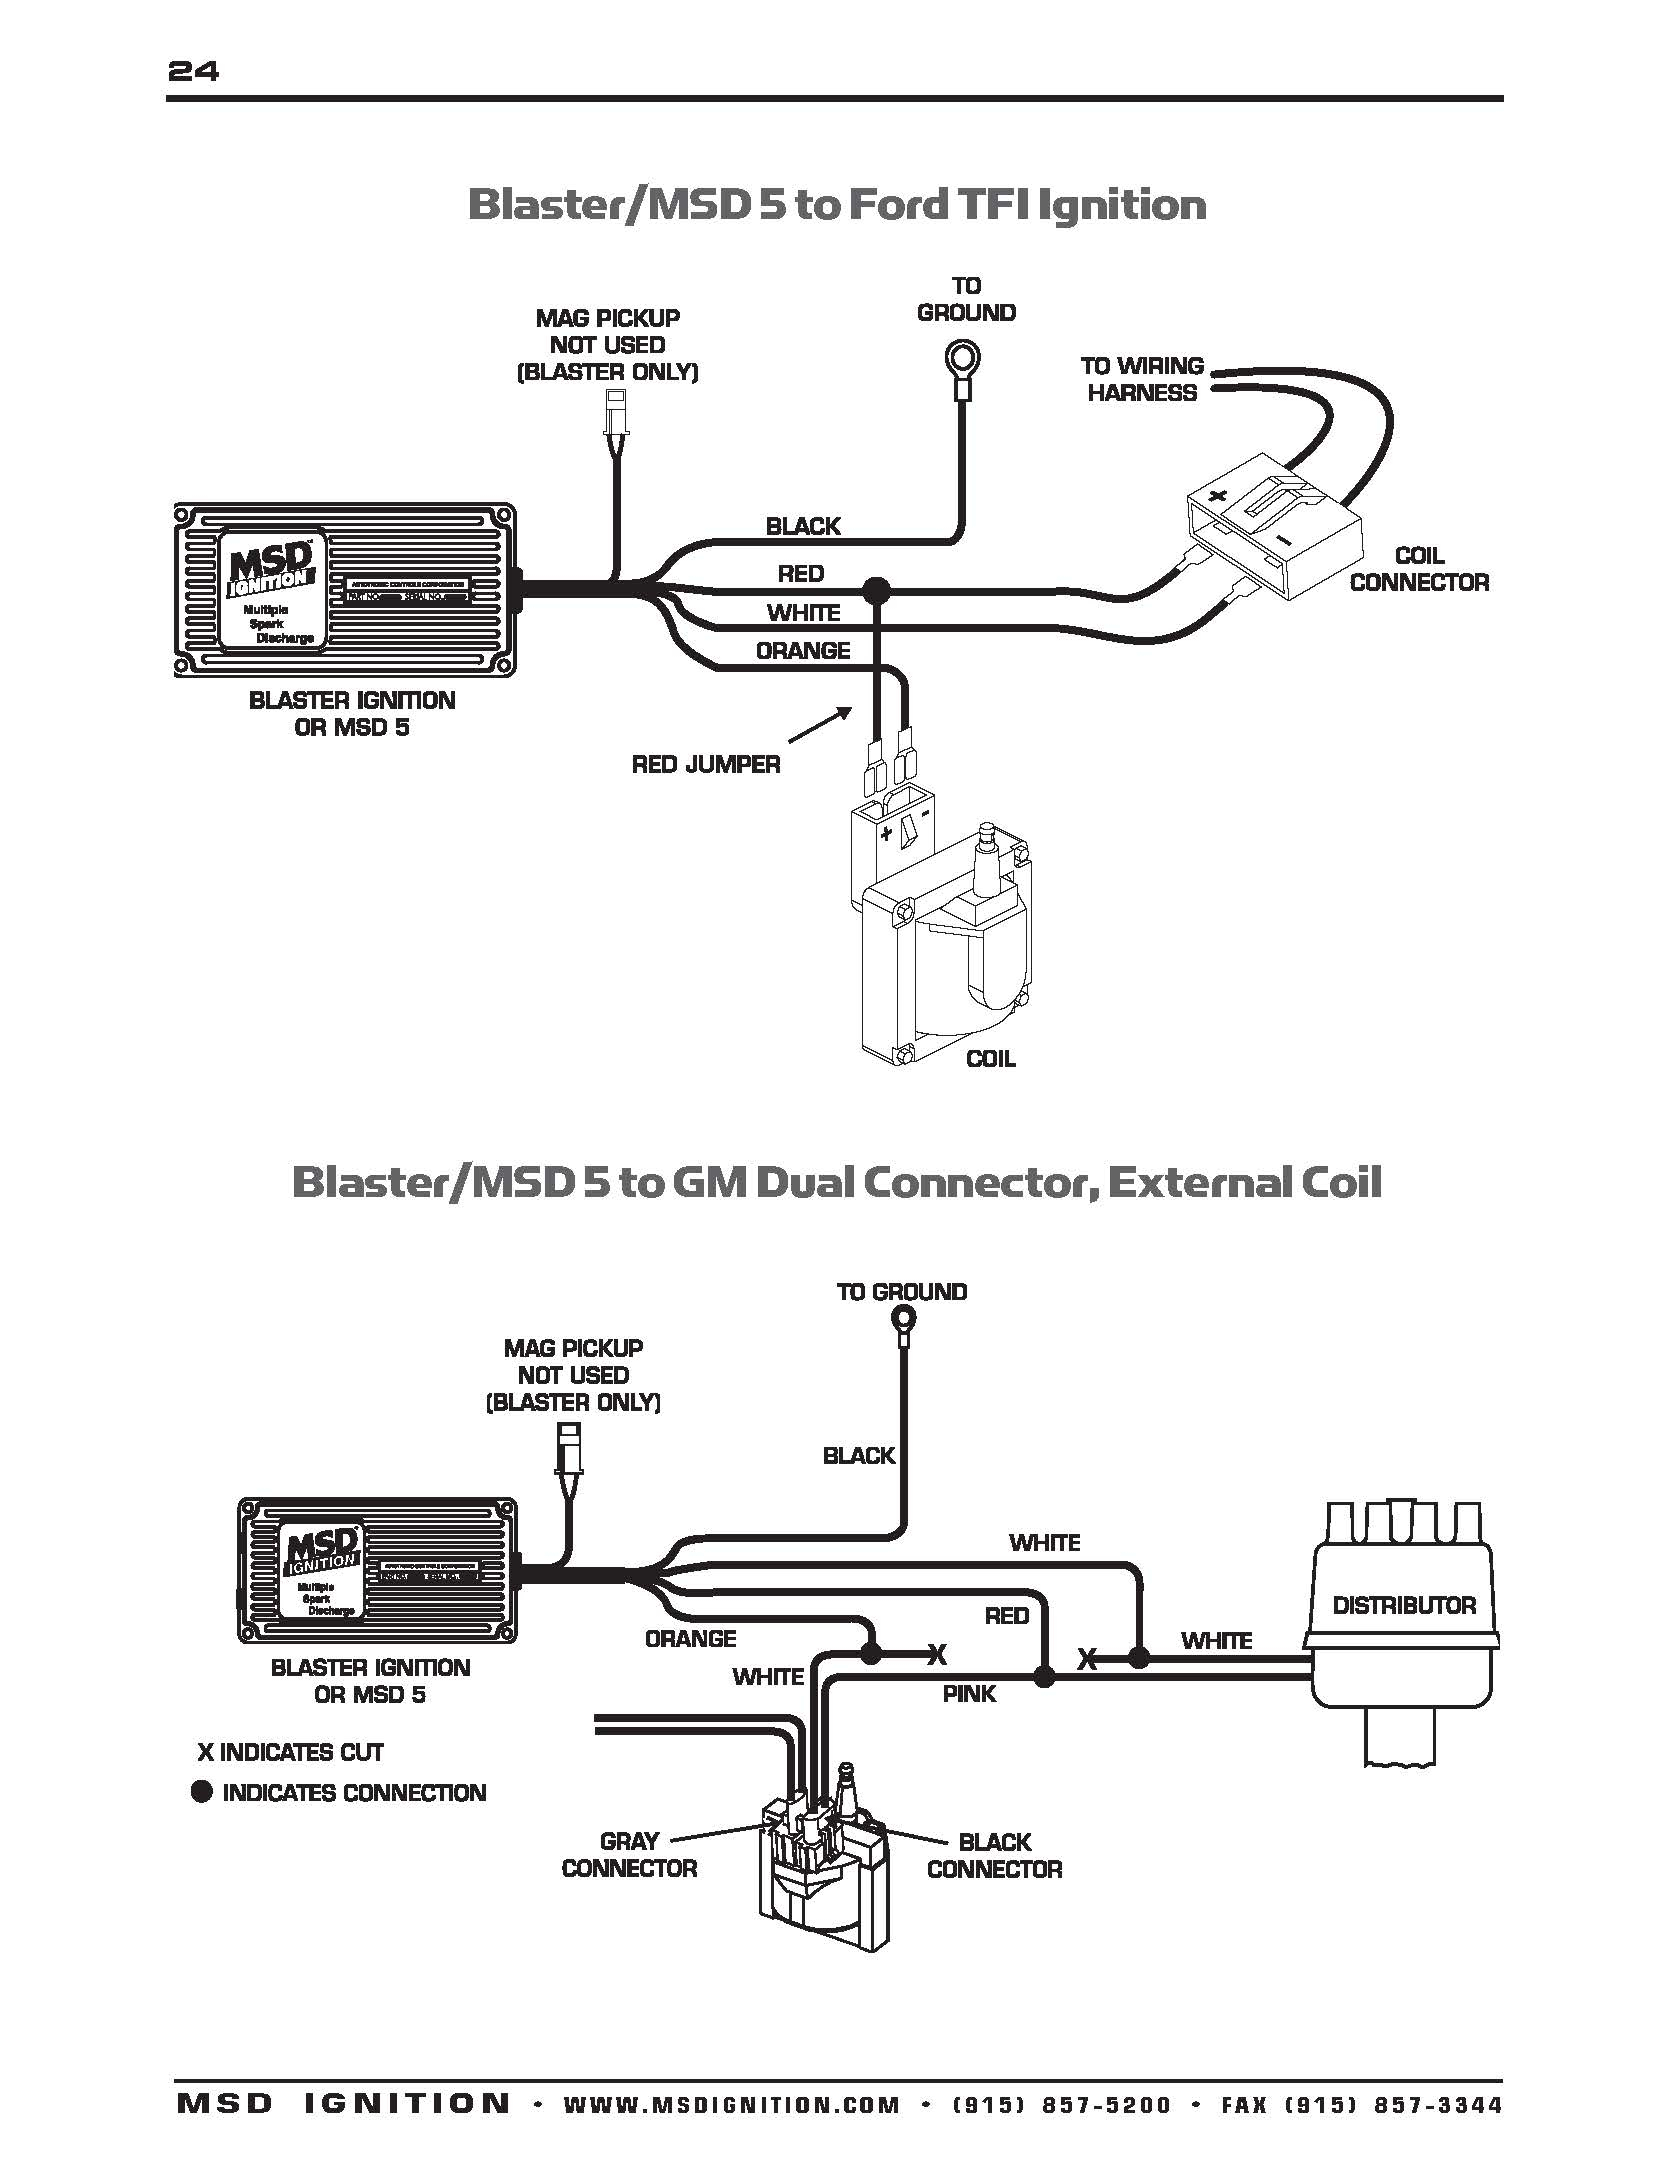 Msd Ignition Wiring Diagram - Wiring Diagrams Hubs - Msd Distributor Wiring Diagram